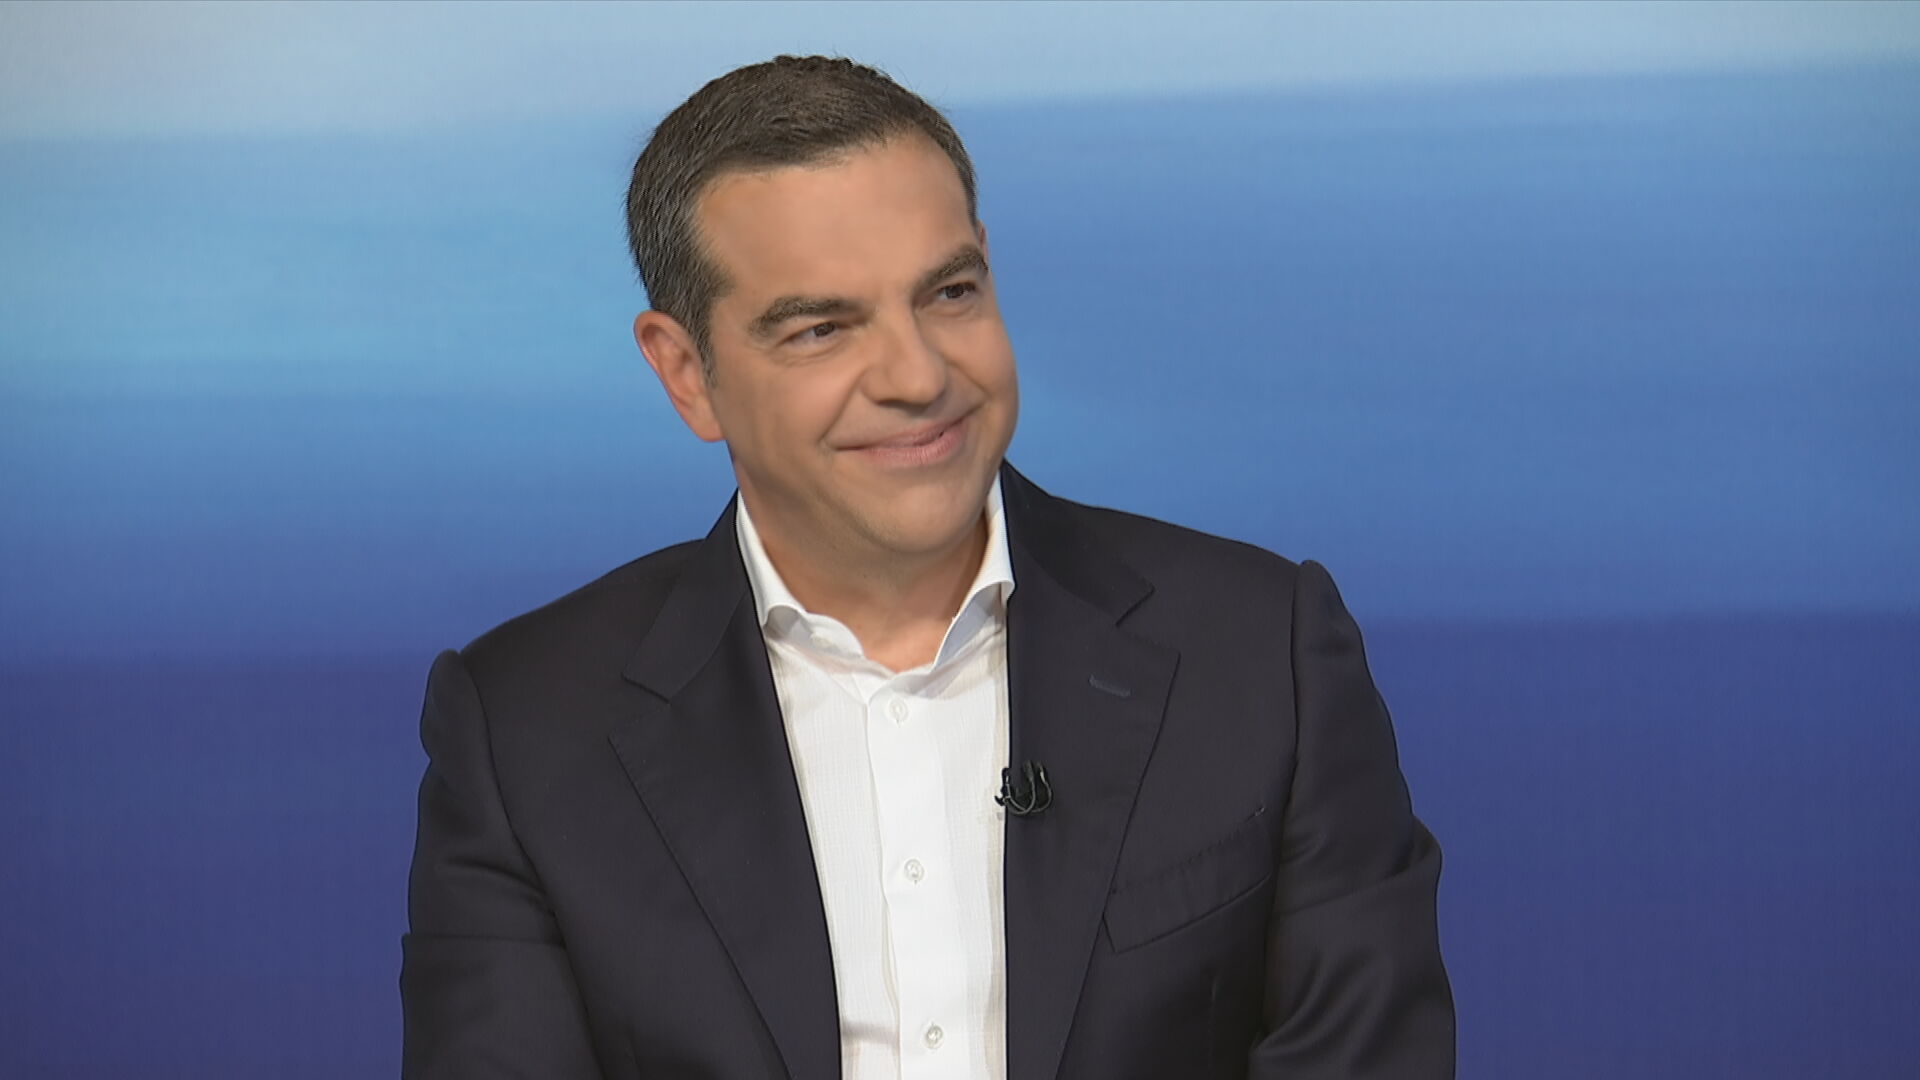 ΣΥΡΙΖΑ: Ο Α. Τσίπρας θα παραστεί στη συζήτηση με τον Μπ. Ομπάμα στο SNF Nostos Conference